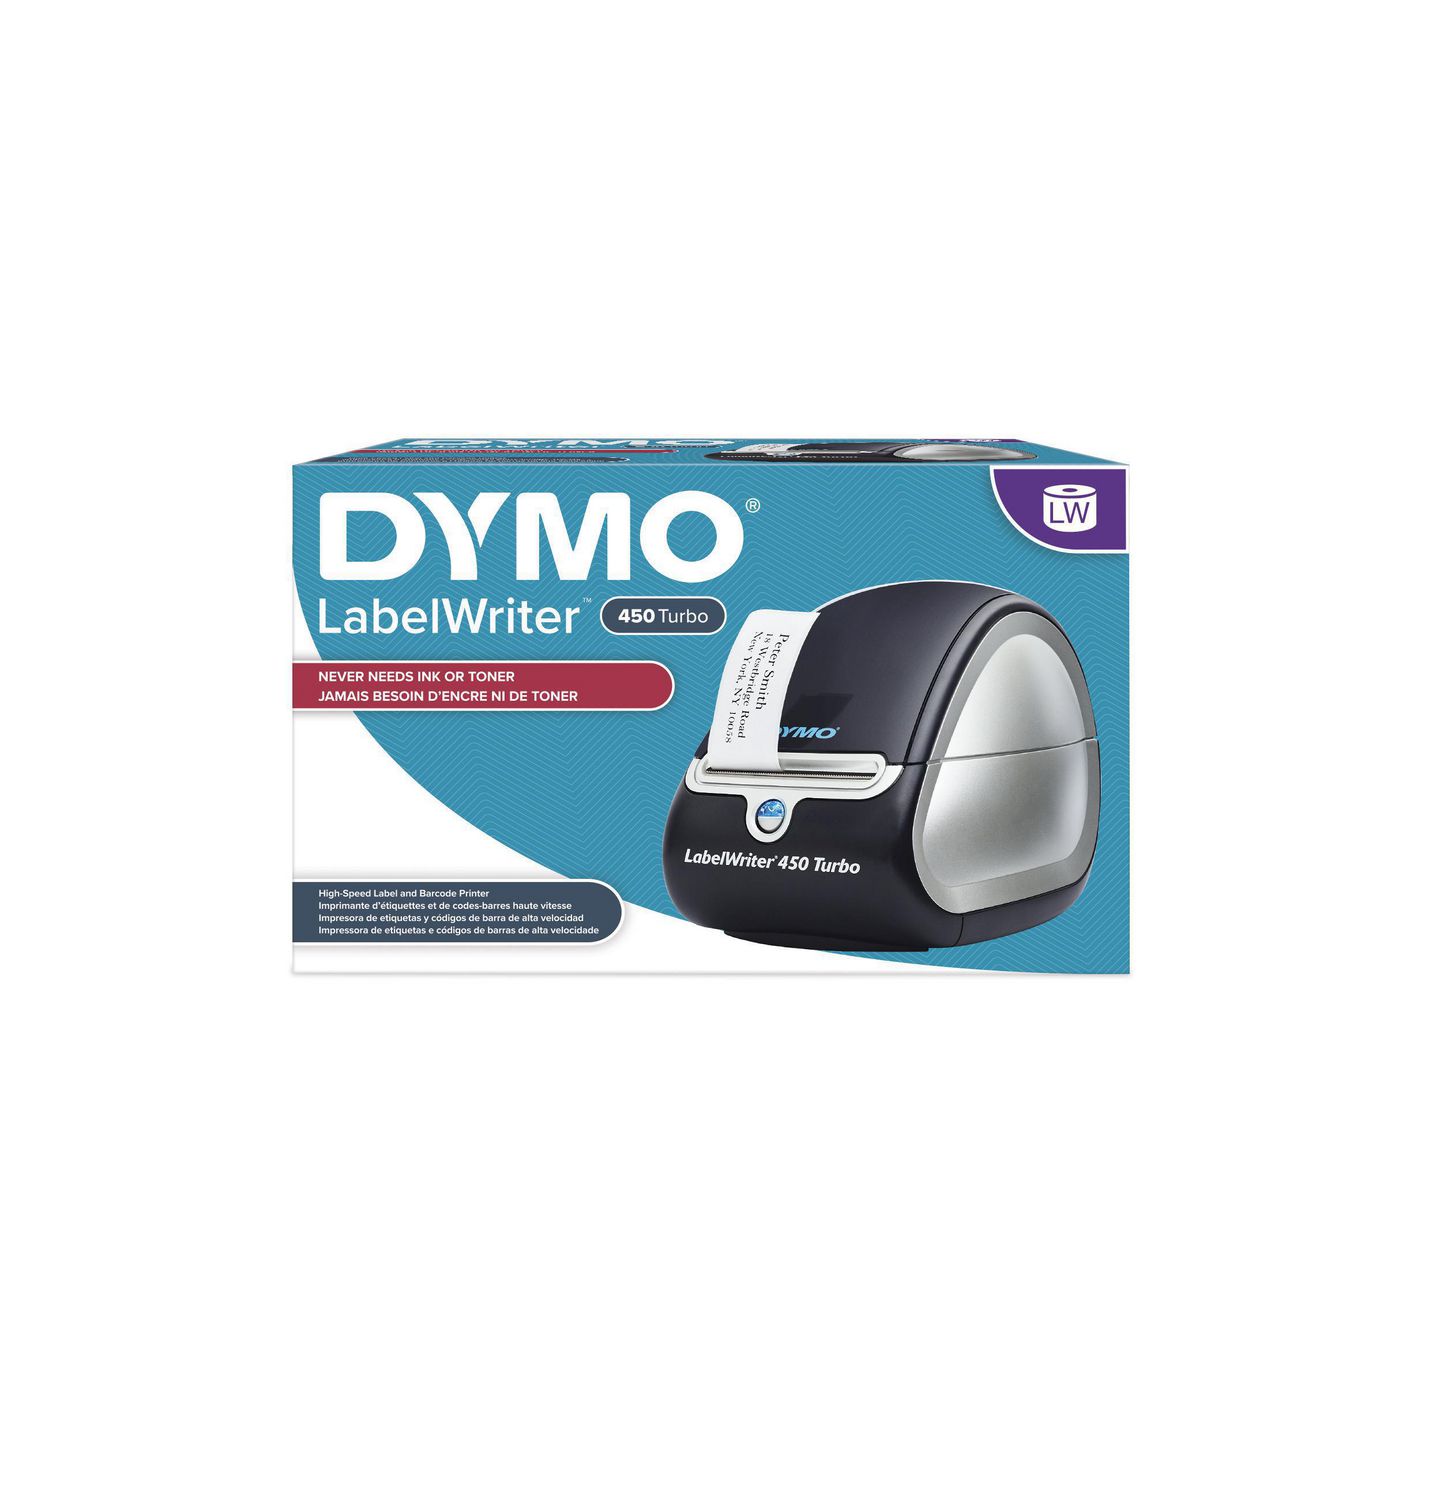 dymo labelwriter 450 turbo thermal label printer.